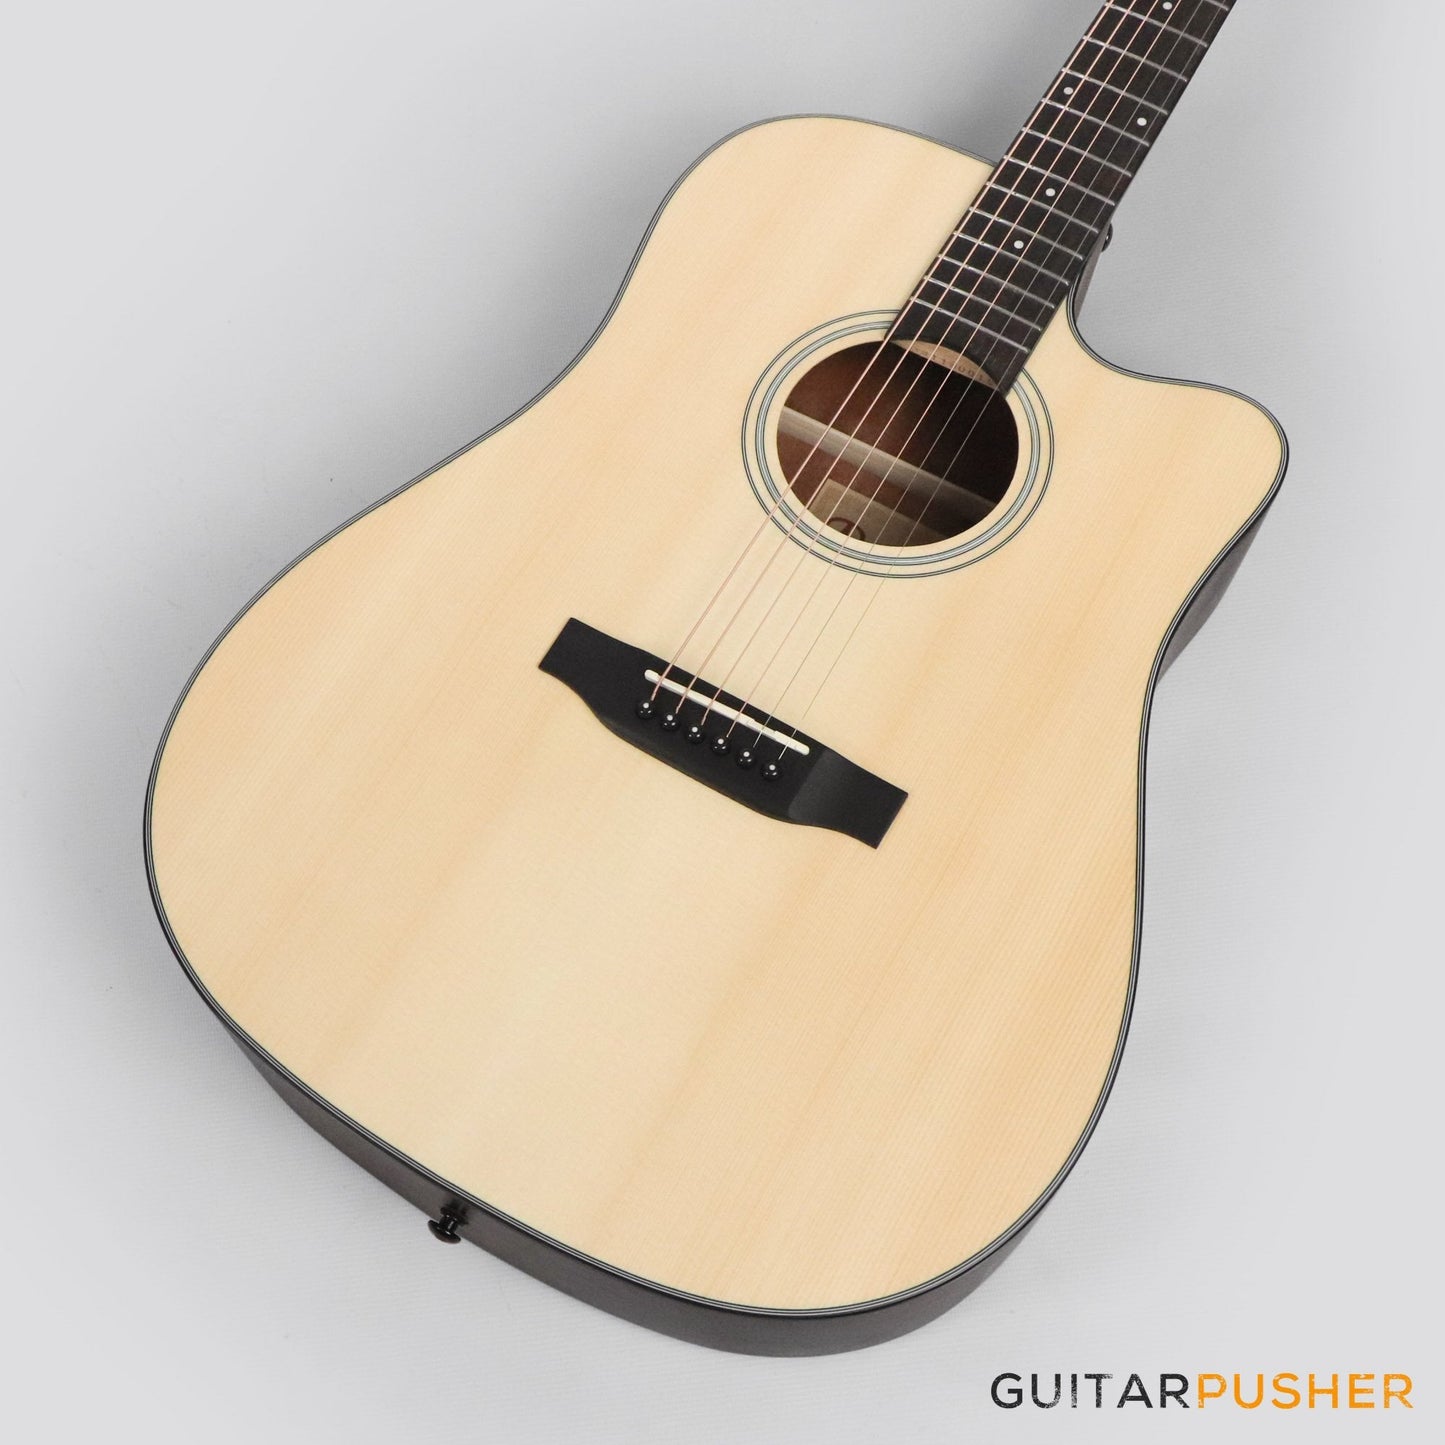 Phoebus PG-30c v3 Dreadnought (3rd Gen.) Acoustic Guitar w/ Gig Bag - GuitarPusher